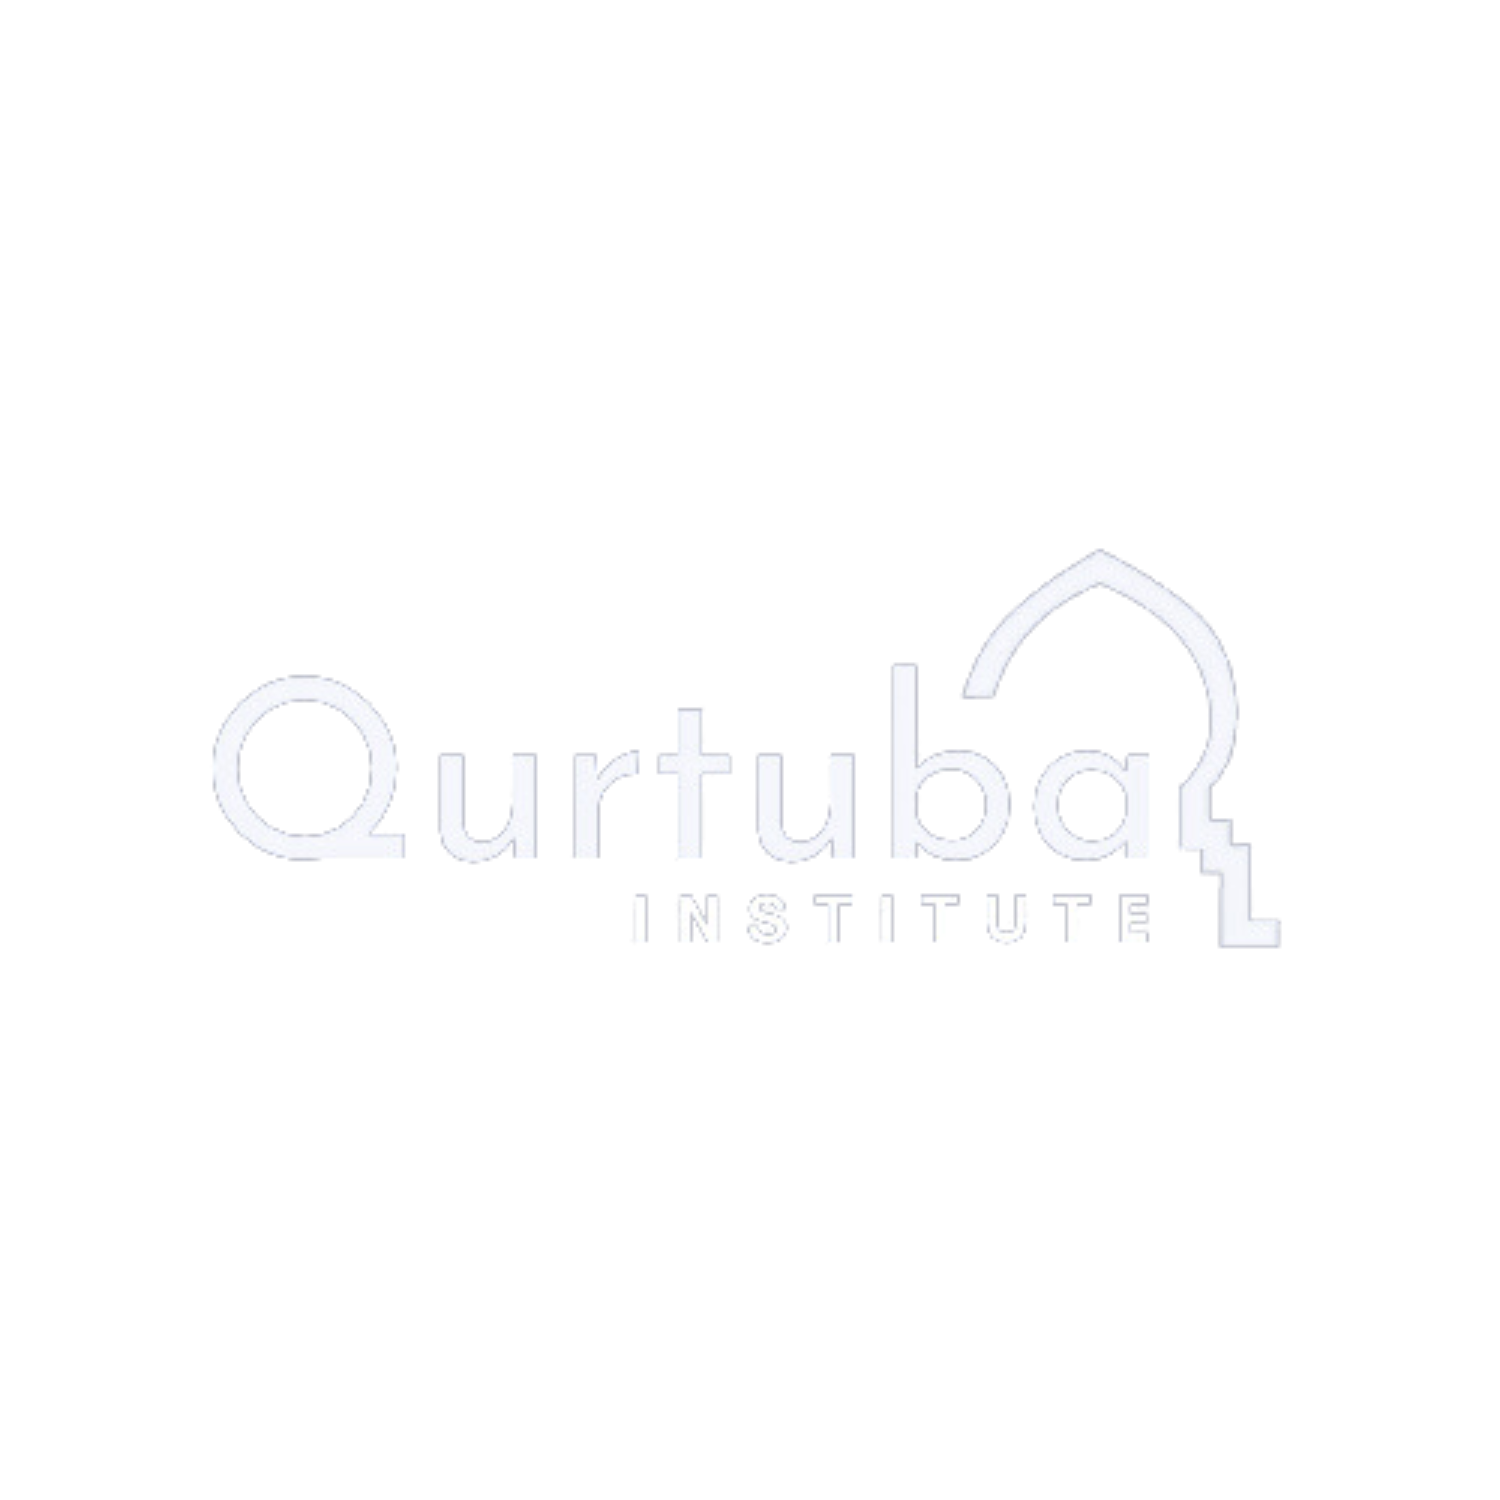 Qurtuba logo1